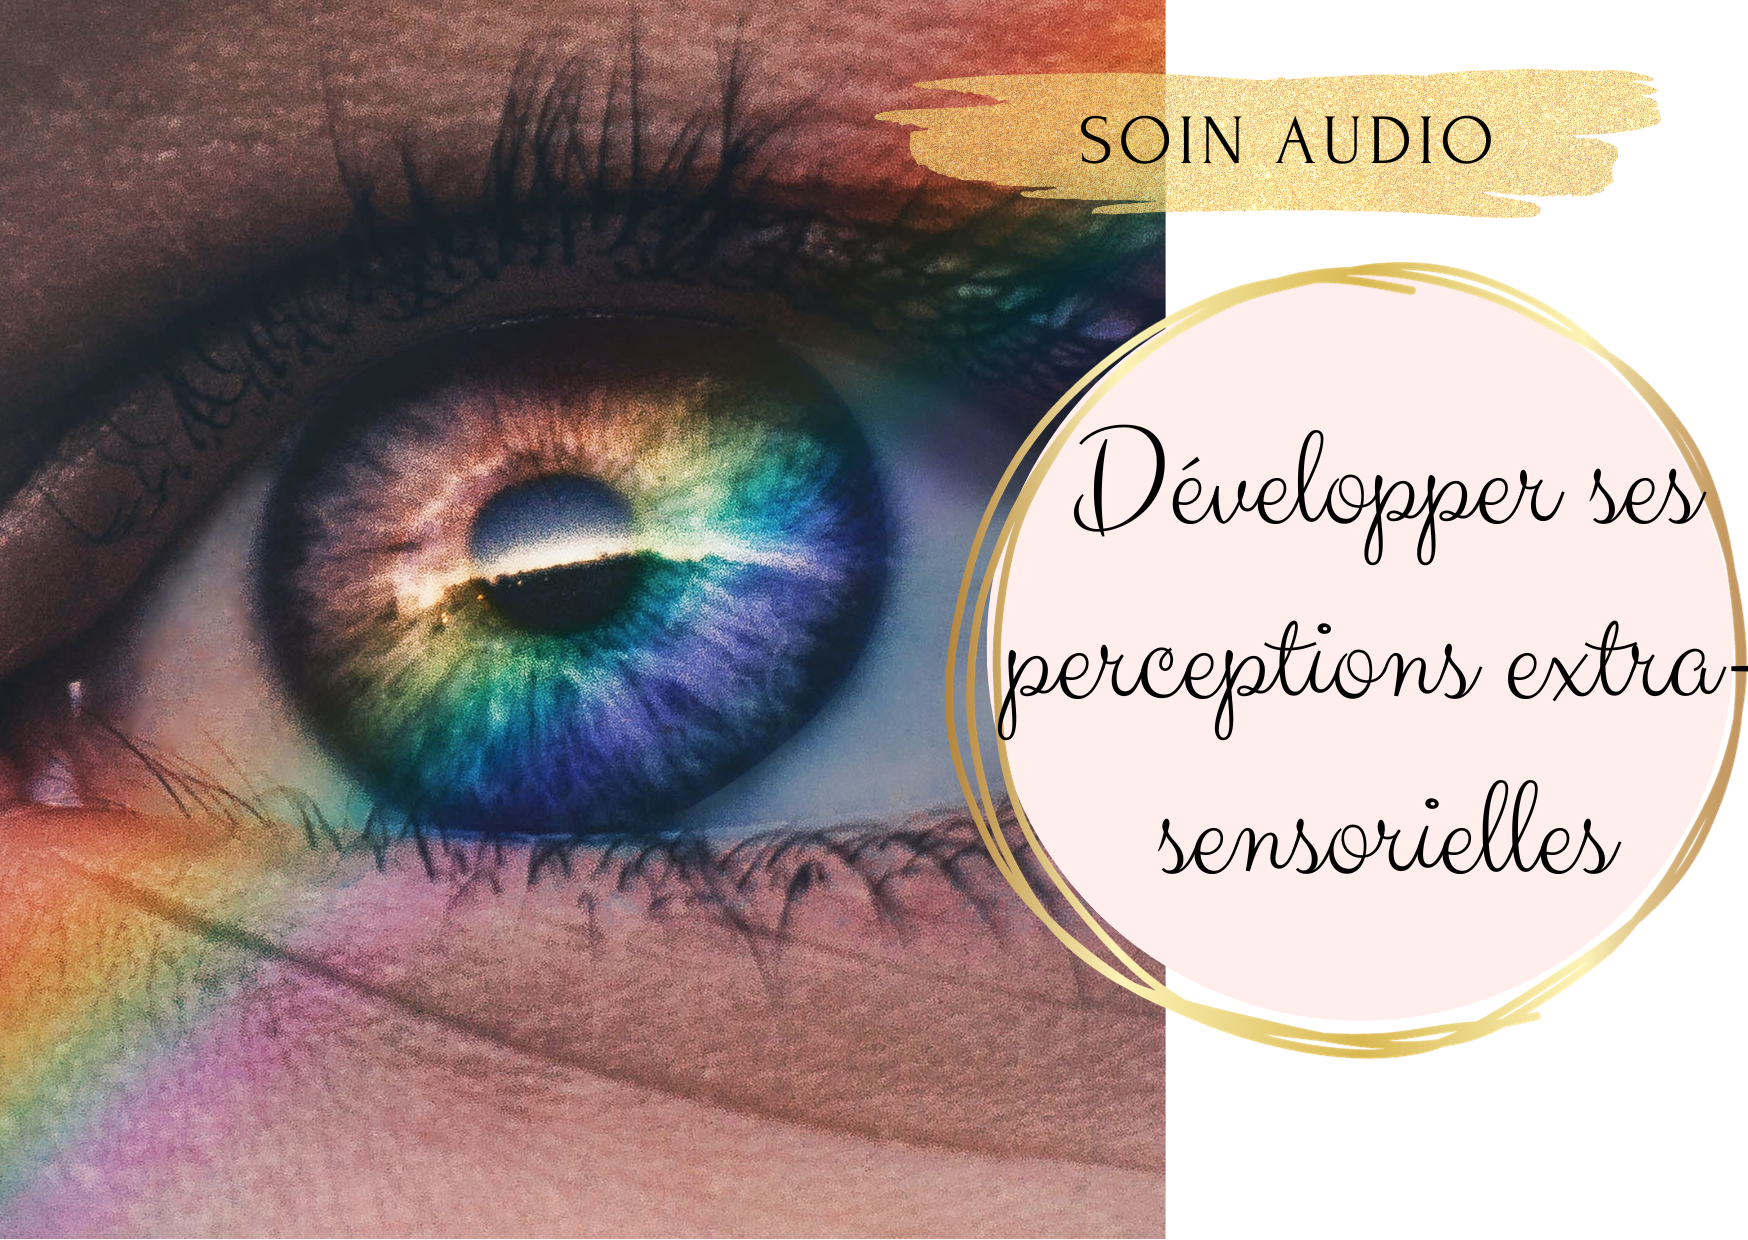 Soin audio – Développer ses perceptions extra-sensorielles et son intuition